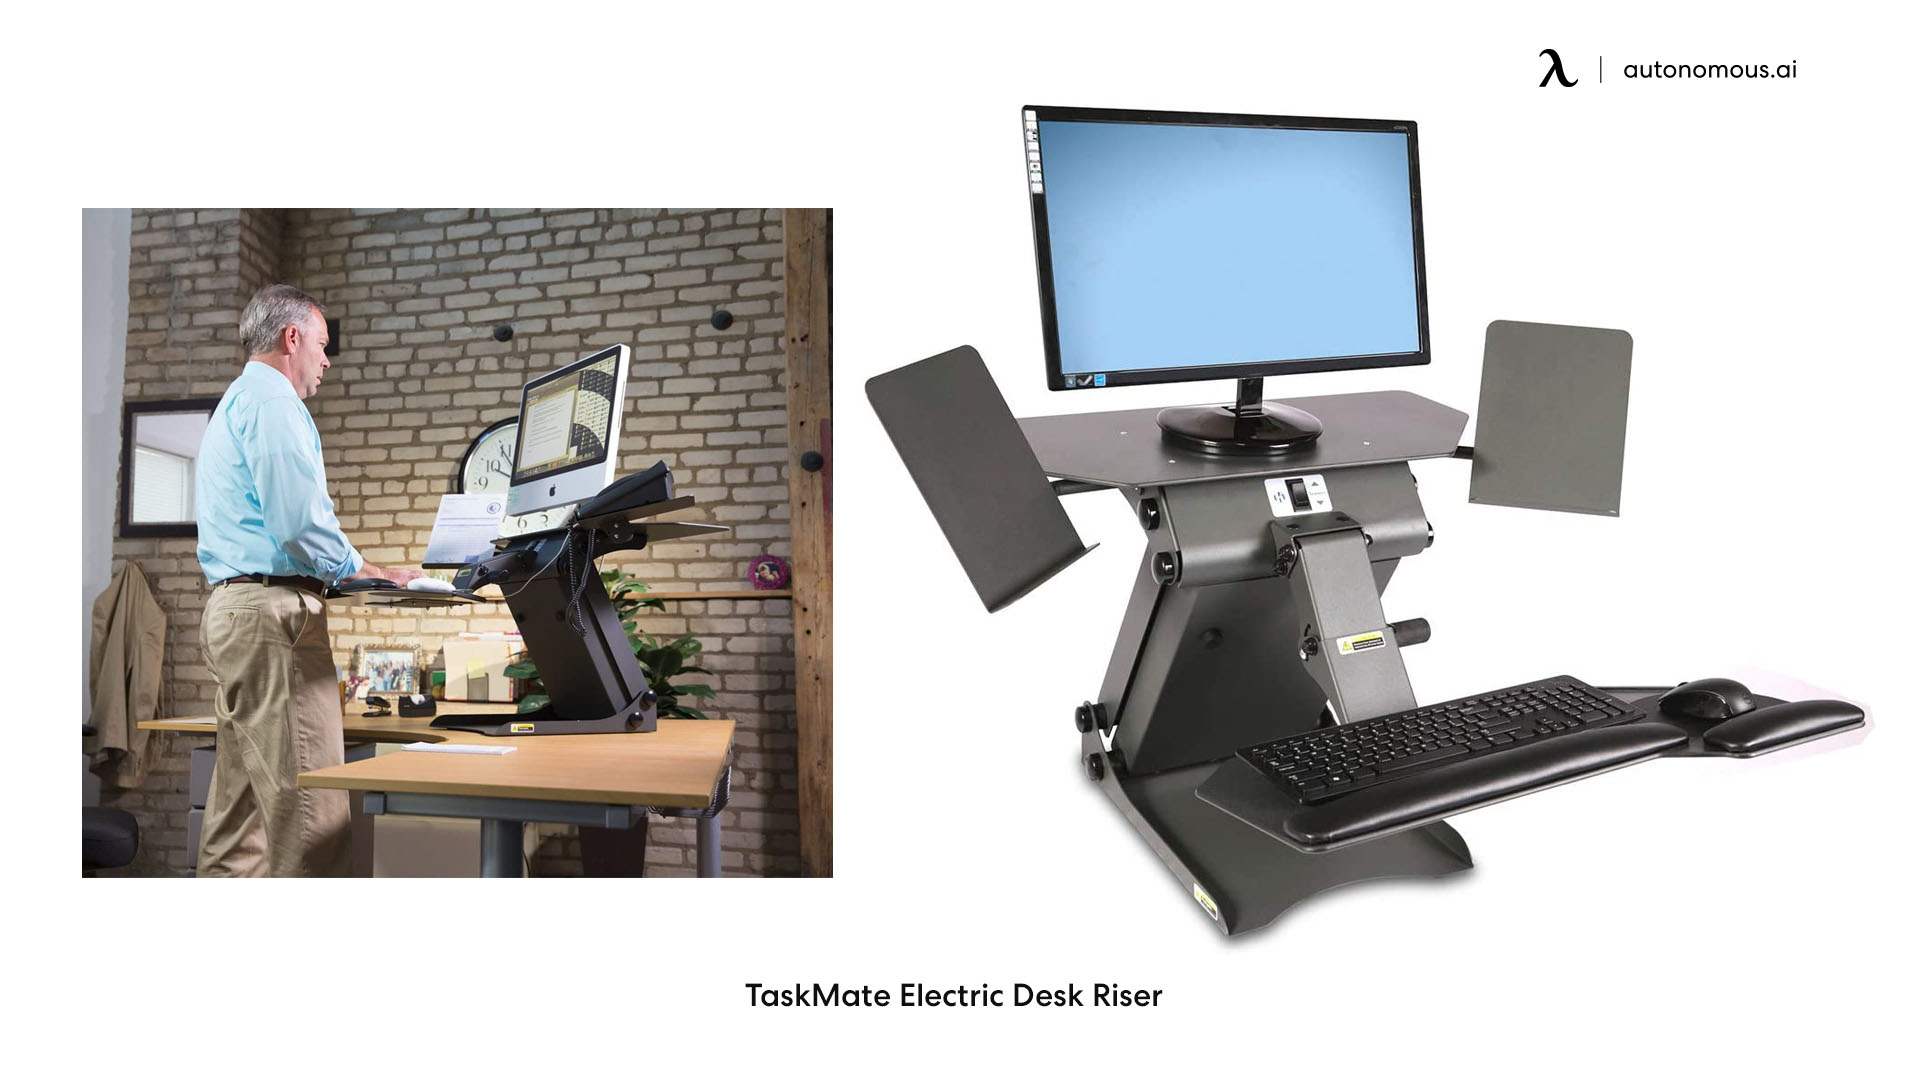 TaskMate Electric Desk Riser